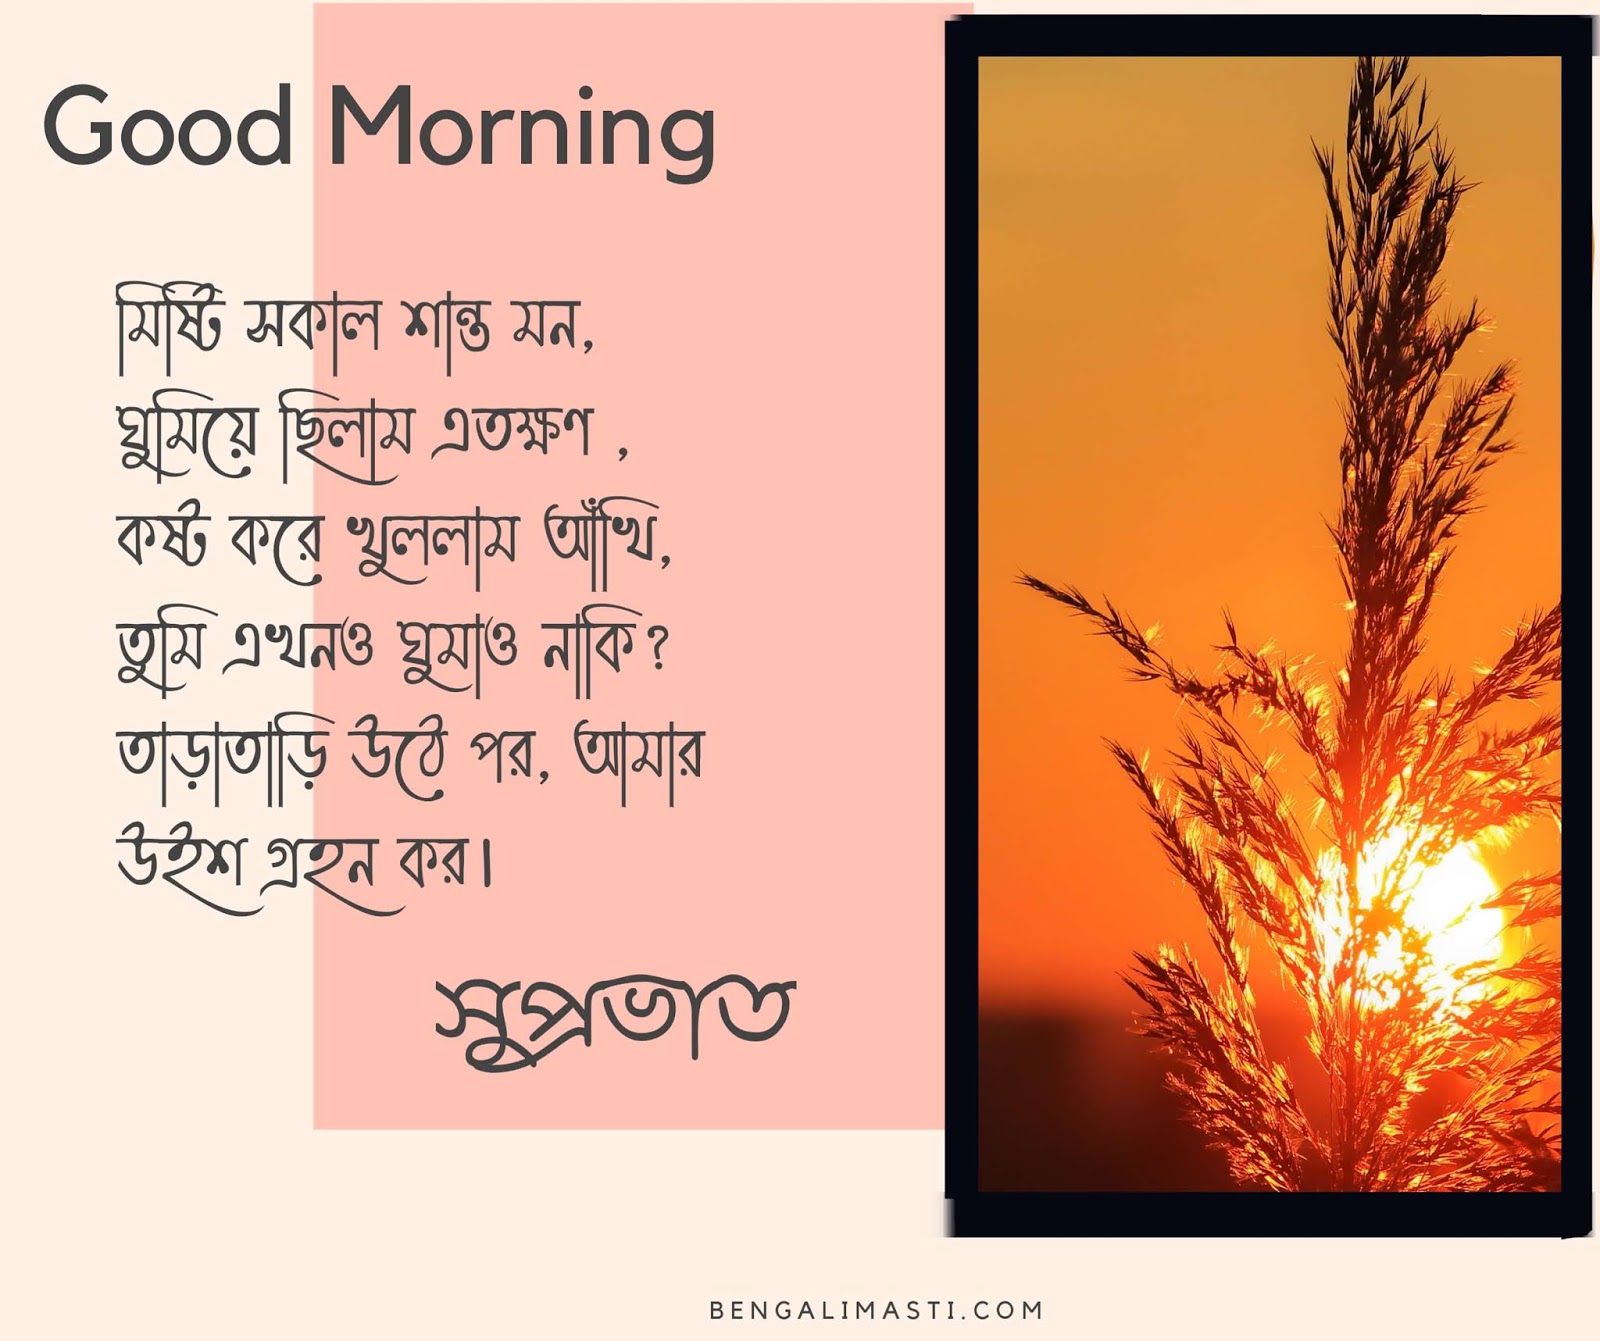 Good Morning image in bengali